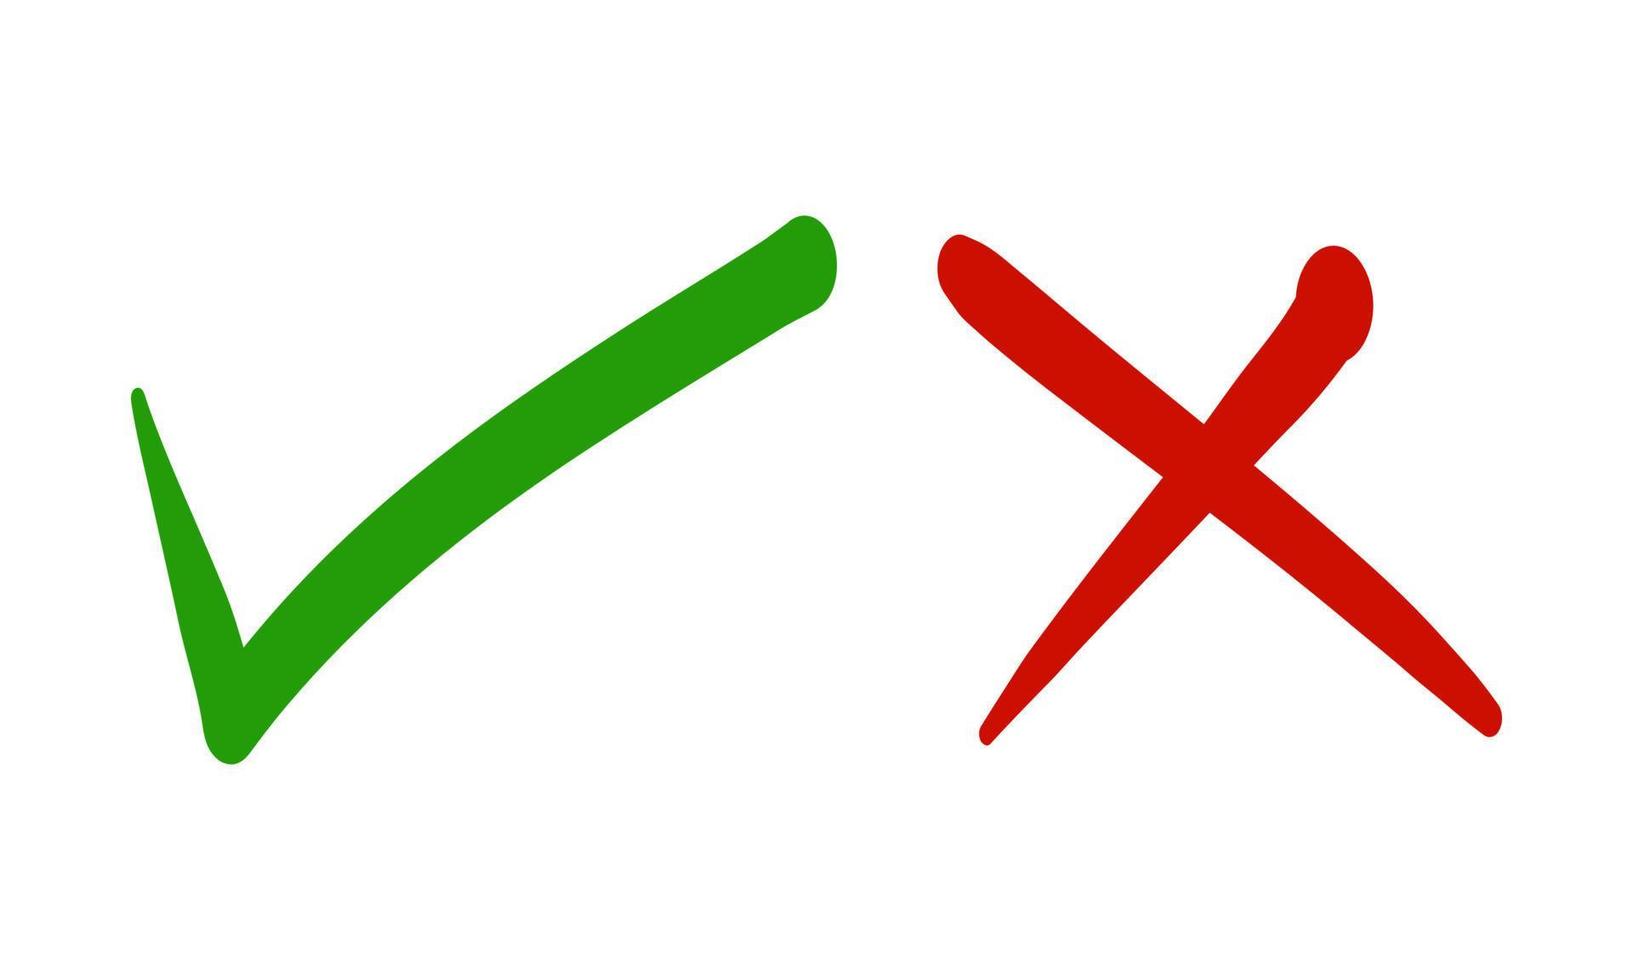 controleren Mark en kruis Mark icoon set. Kruis aan symbool in groen en rood kleur. vector illustratie